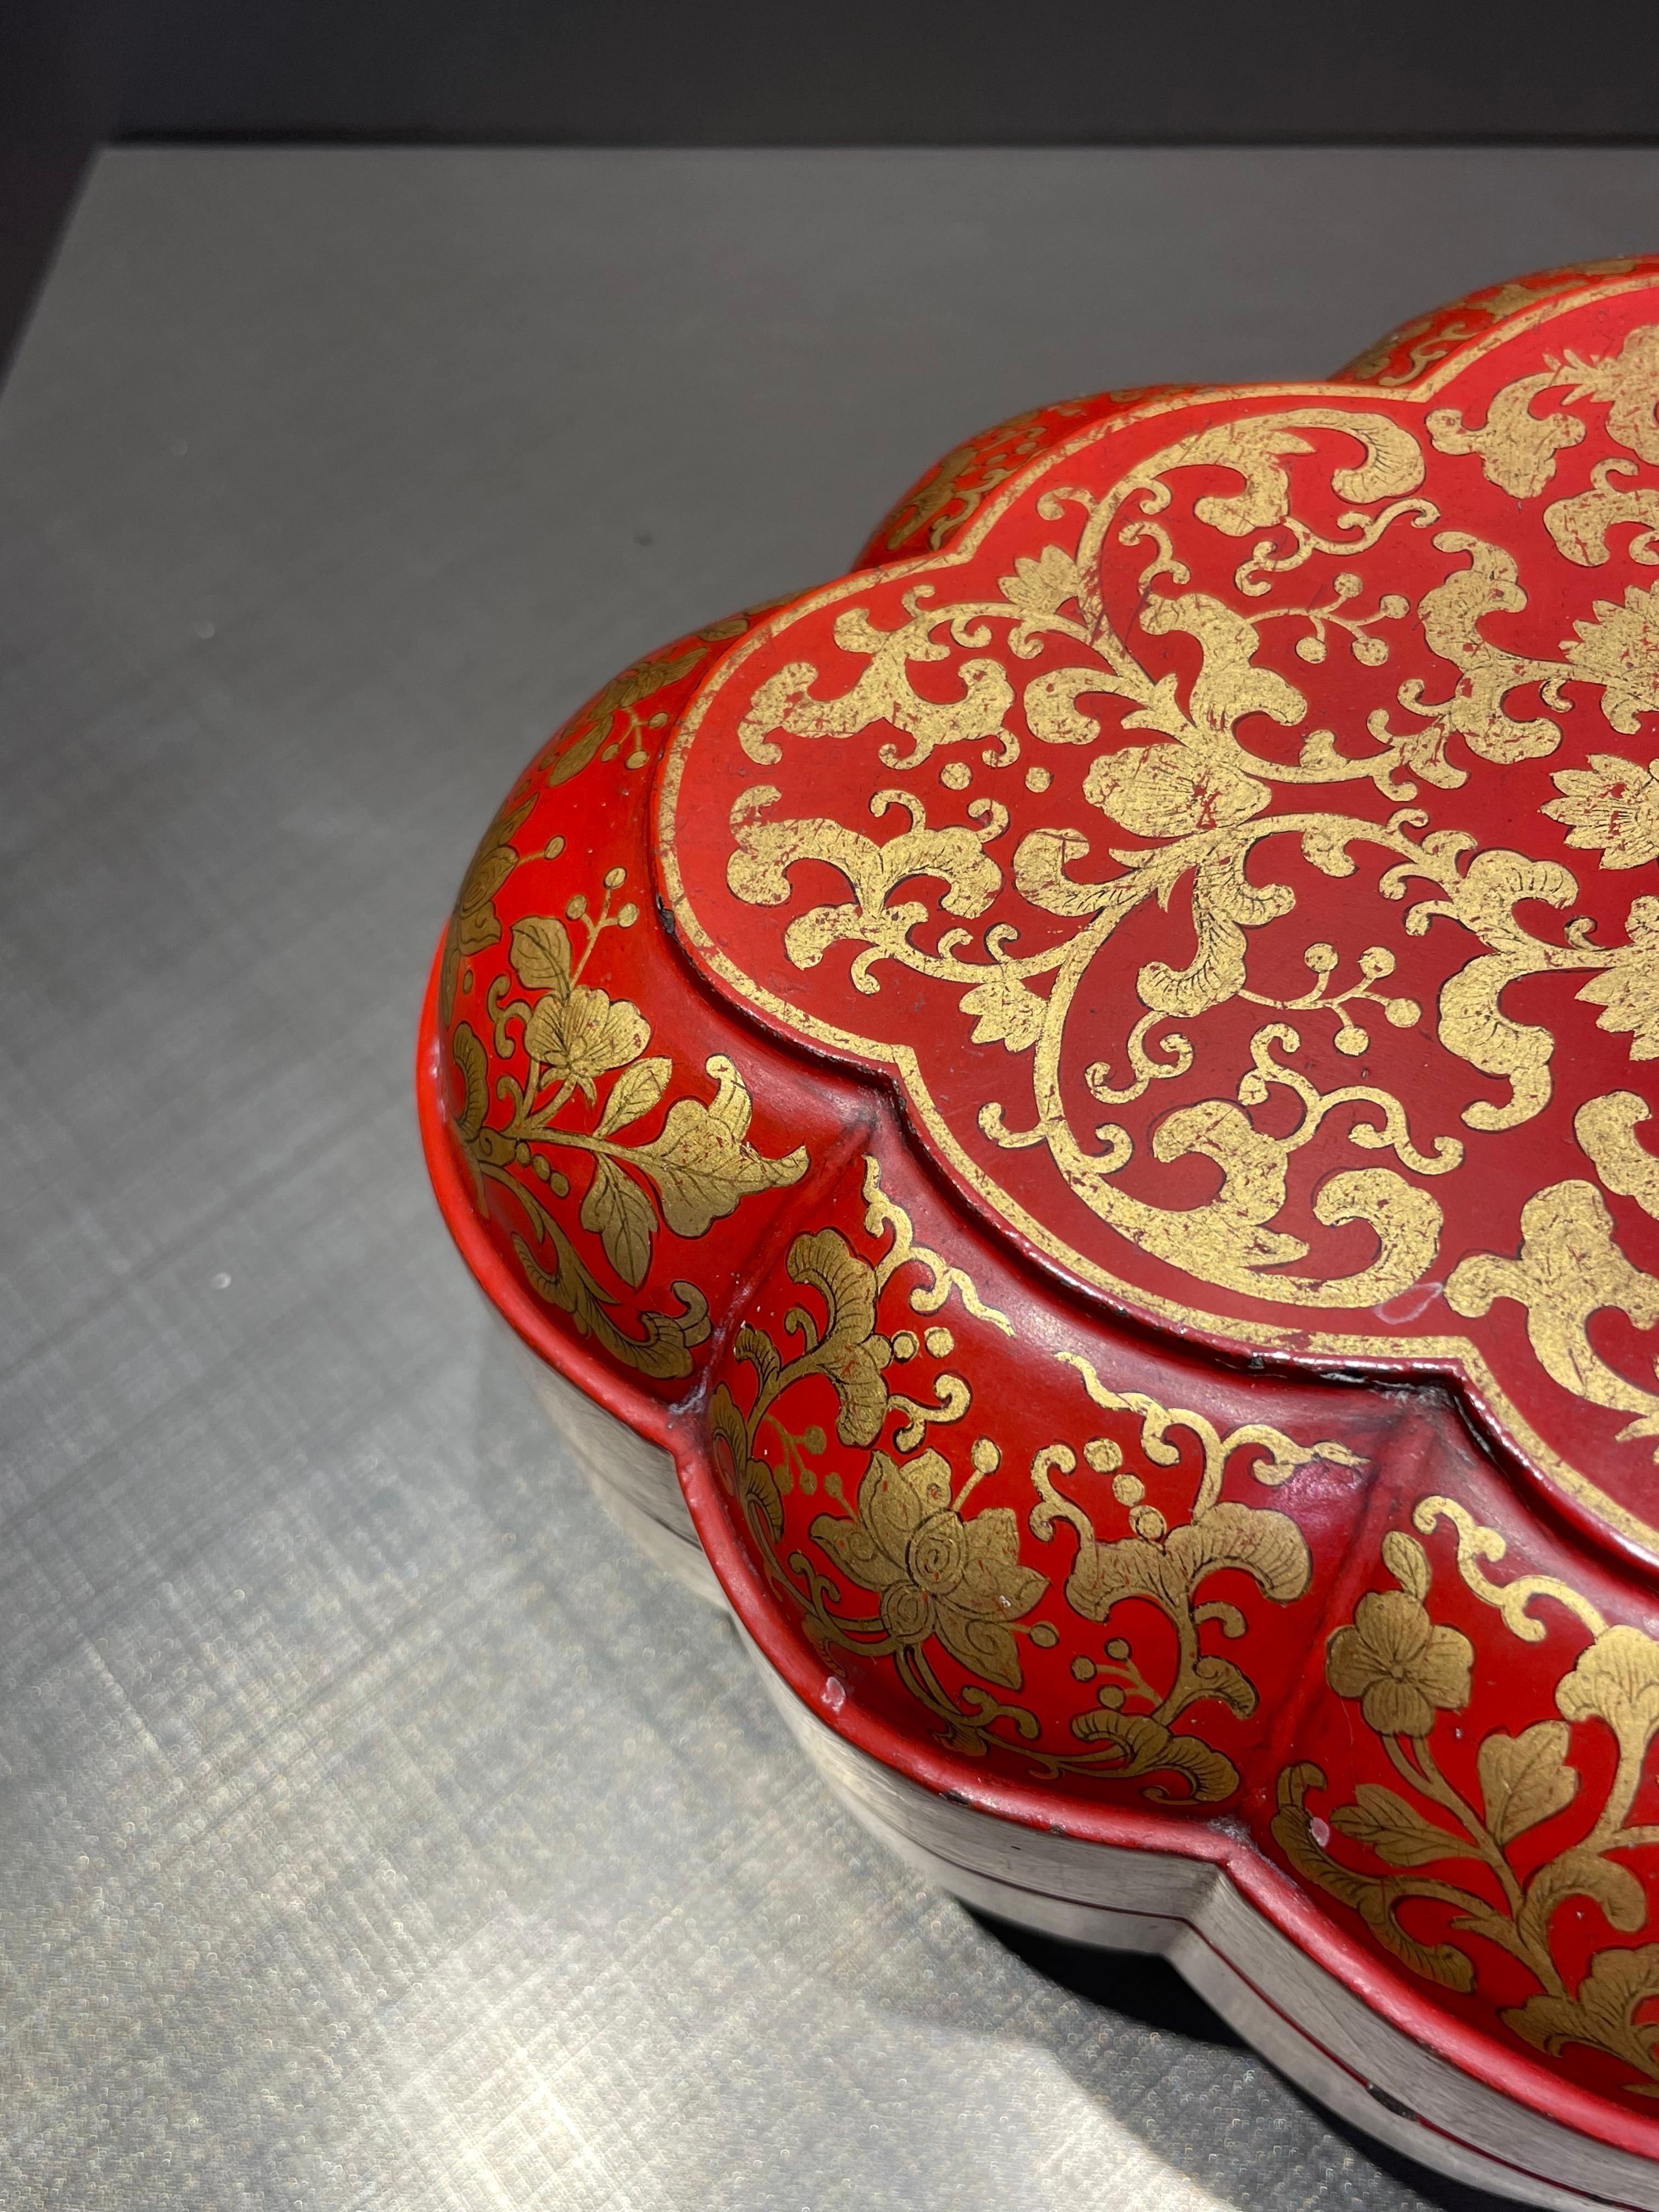 Cette magnifique boîte est magnifiquement décorée de dorures délicates sur une base vermillon brillante. Signée année Qianlong.